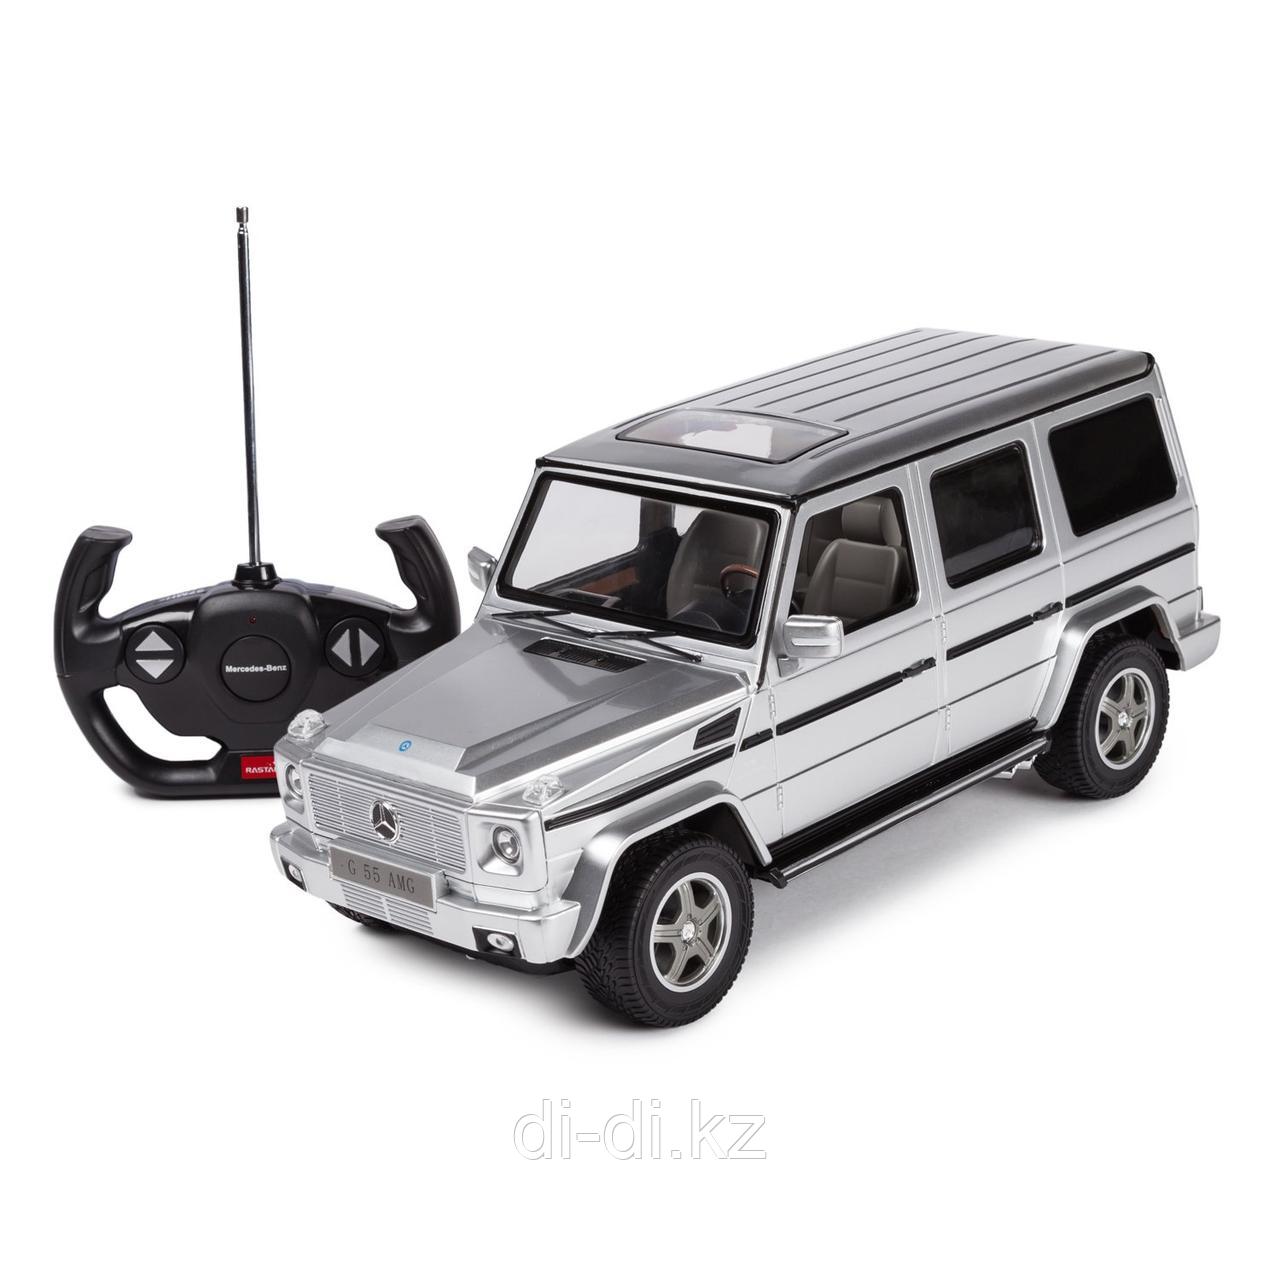 Машинка радиоуправляемая Rastar Mercedes-Benz G55 1:14 серебряная